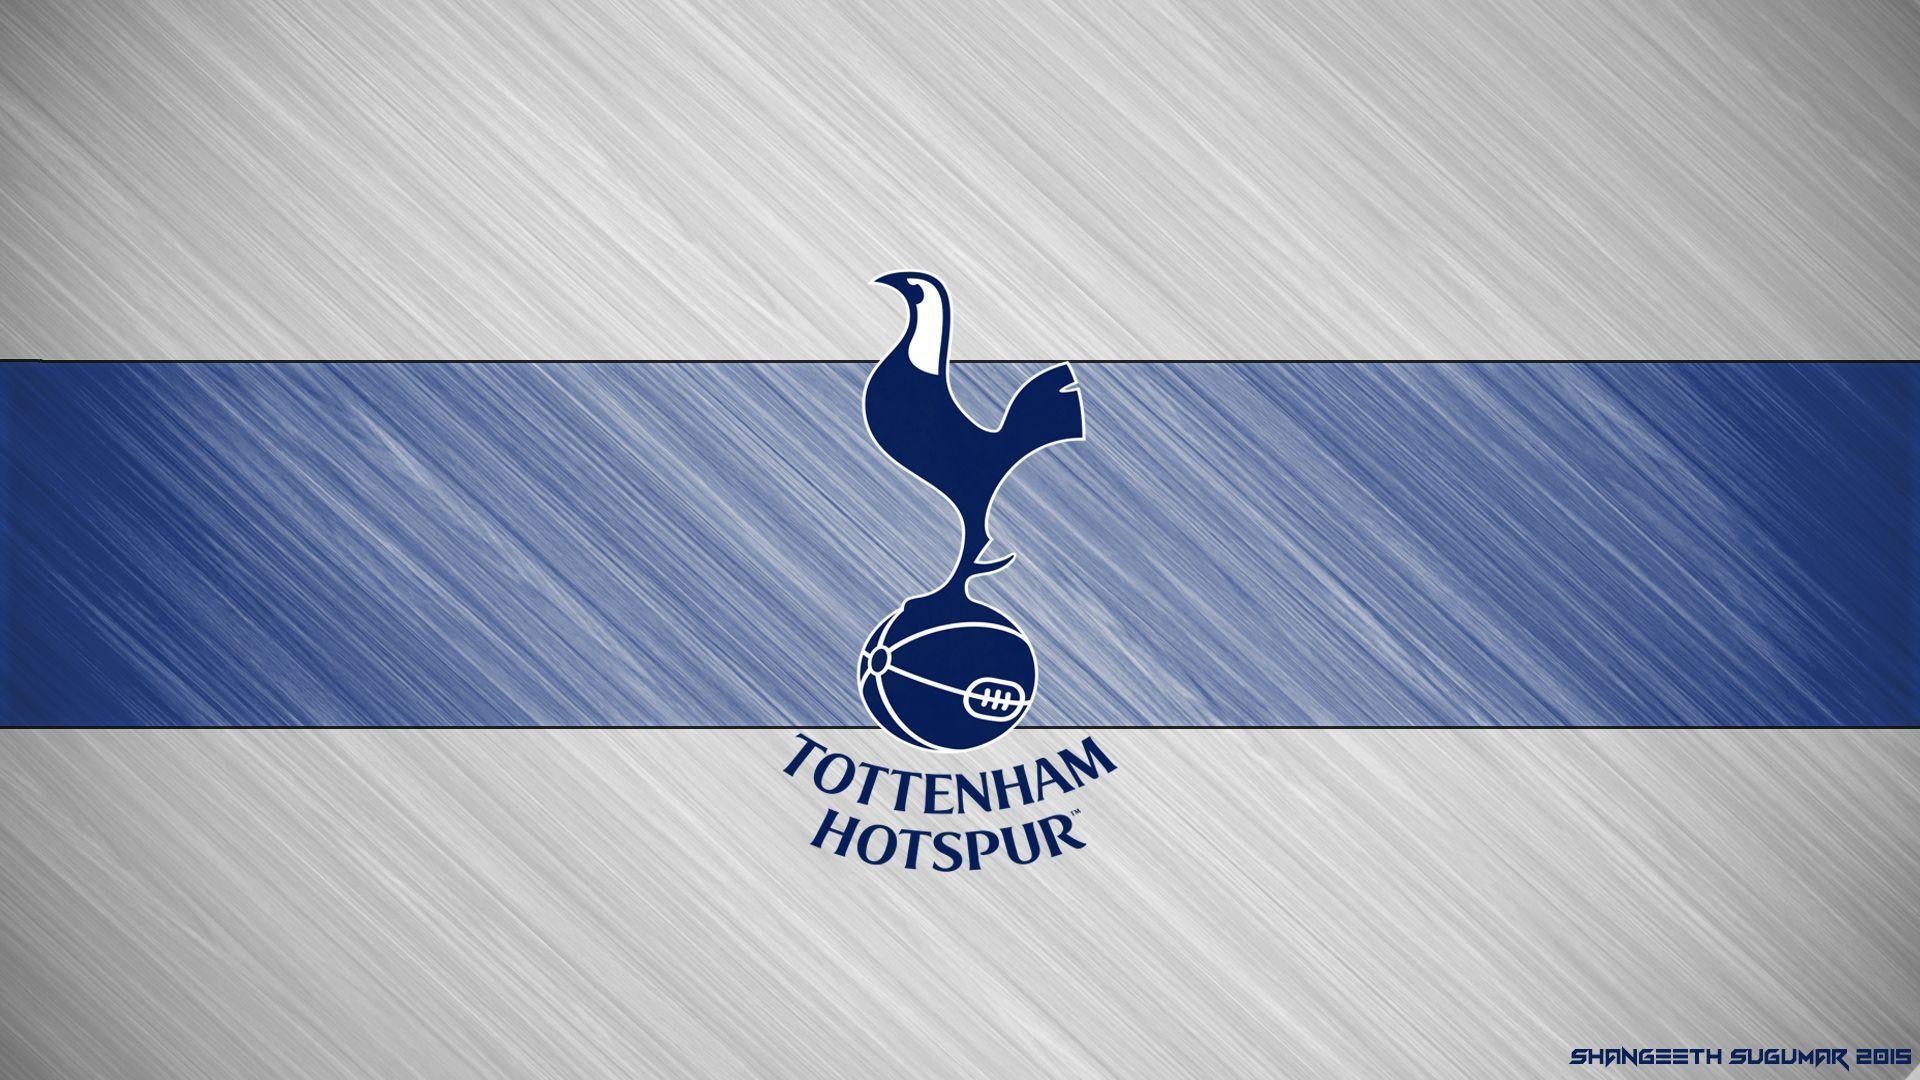 1920x1080 Tottenham Hotspur HD Wallpaper - WallpaperSafari